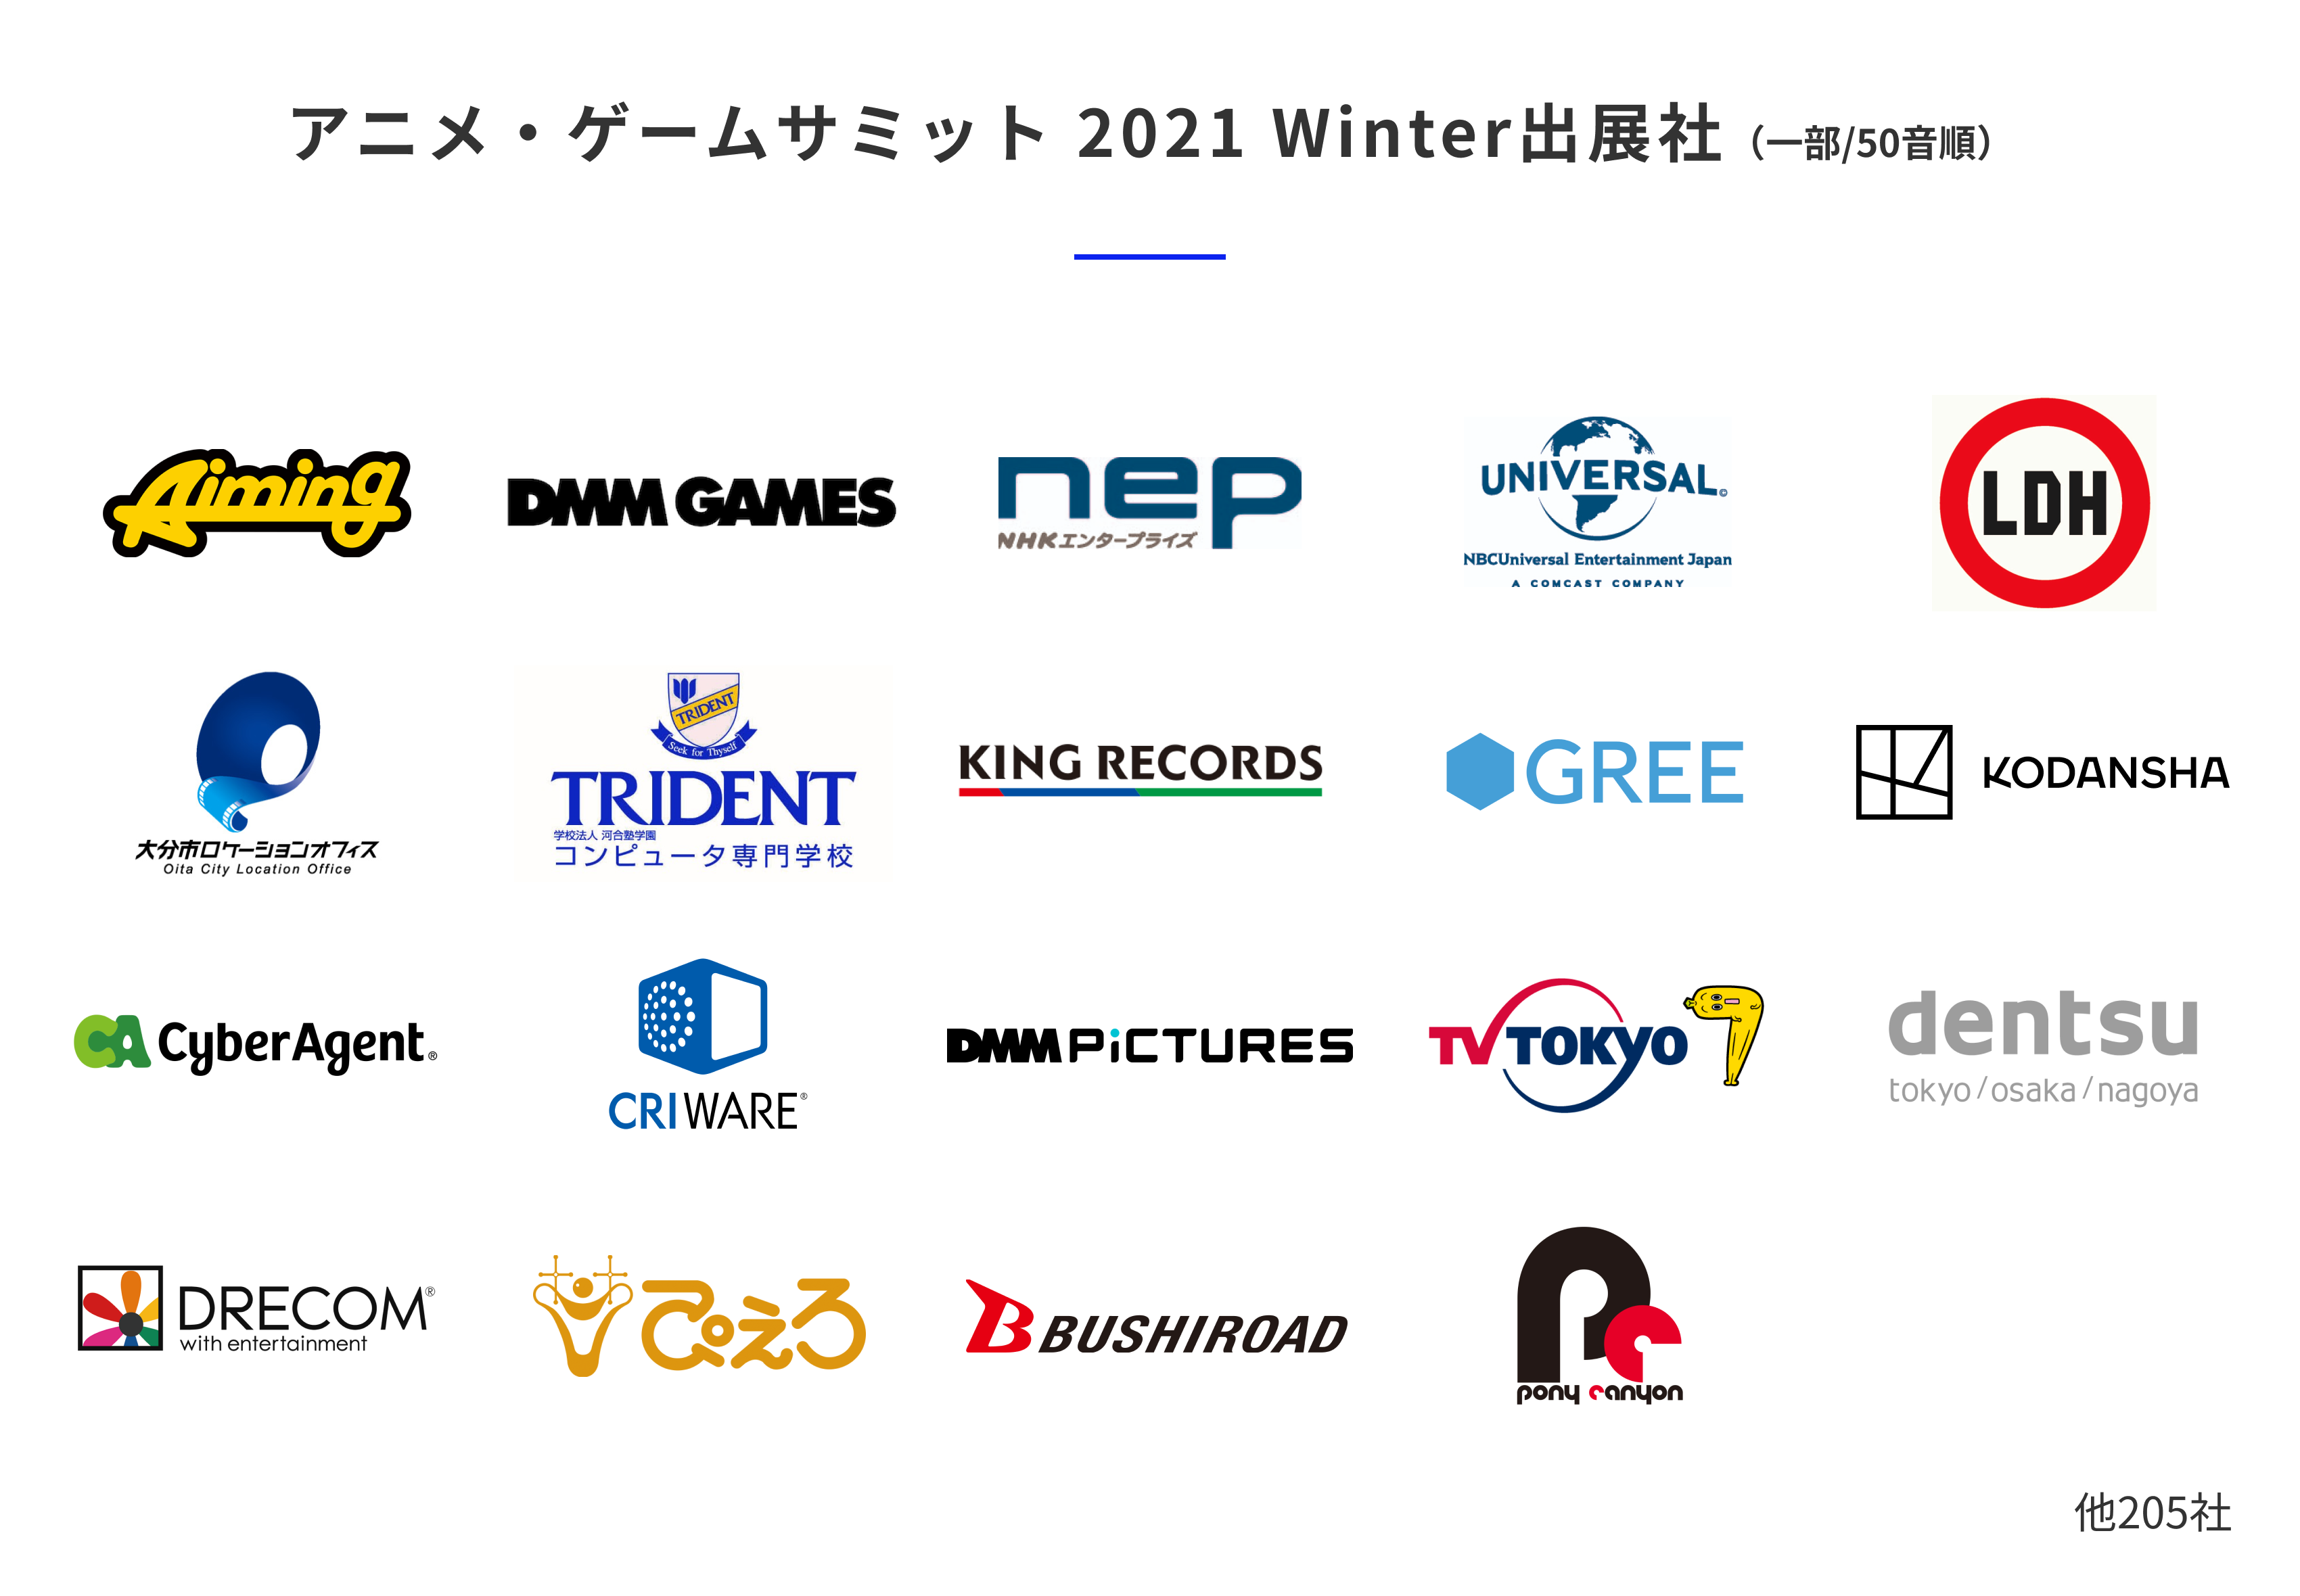 アニメ・ゲーム業界およびアニメ・ゲームとビジネス検討中の企業向けオンライン展示会「アニメ・ゲームサミット 2022」開催決定！無料出展申し込みを開始のサブ画像2